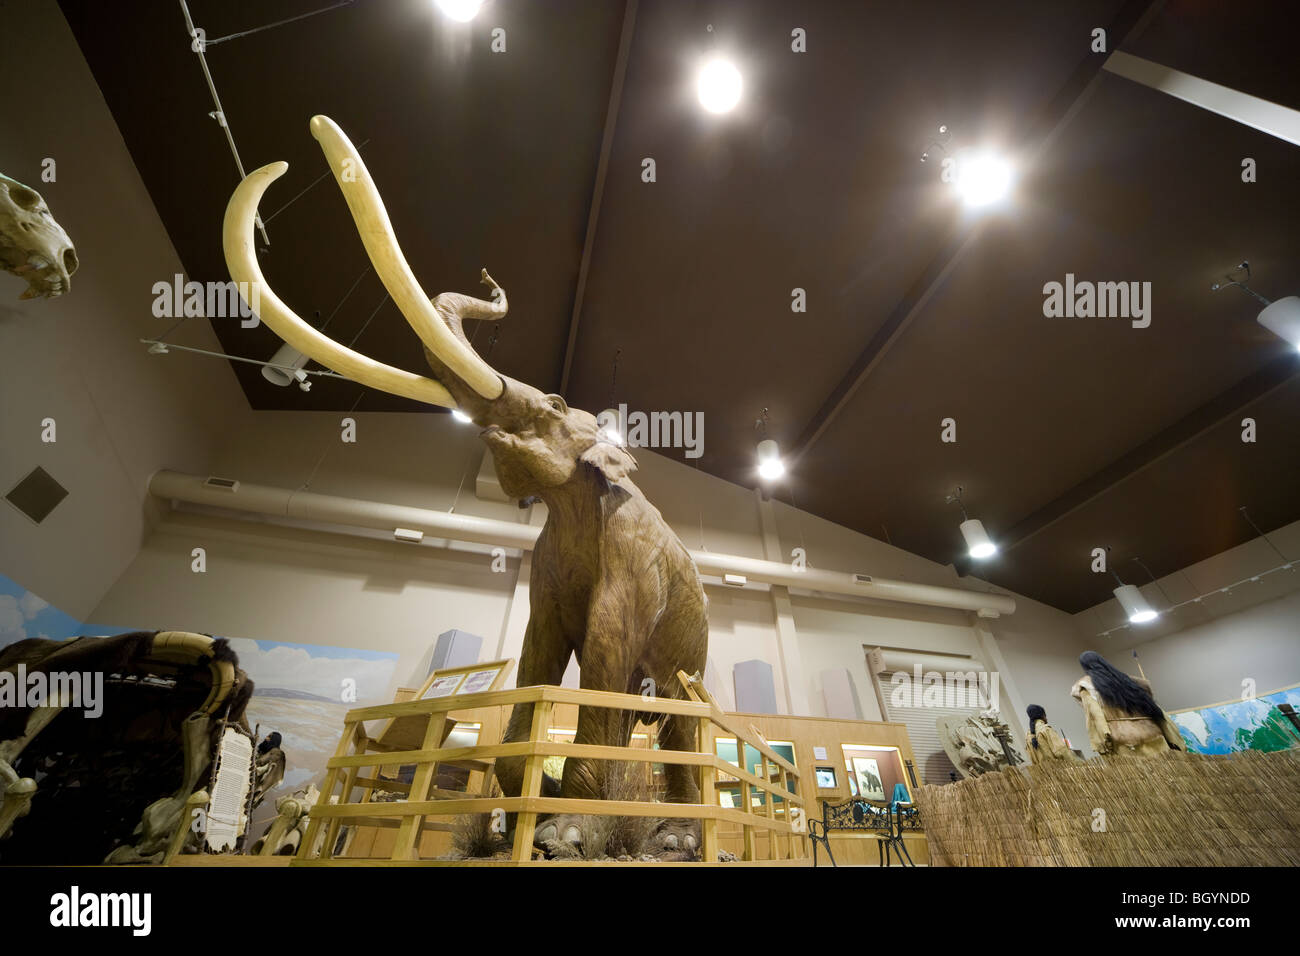 Le Mammoth Site Muller Musée Salle d'exposition de l'âge de glace avec affichage sur mammouth colombien de Hot Springs, South Dakota, USA Banque D'Images